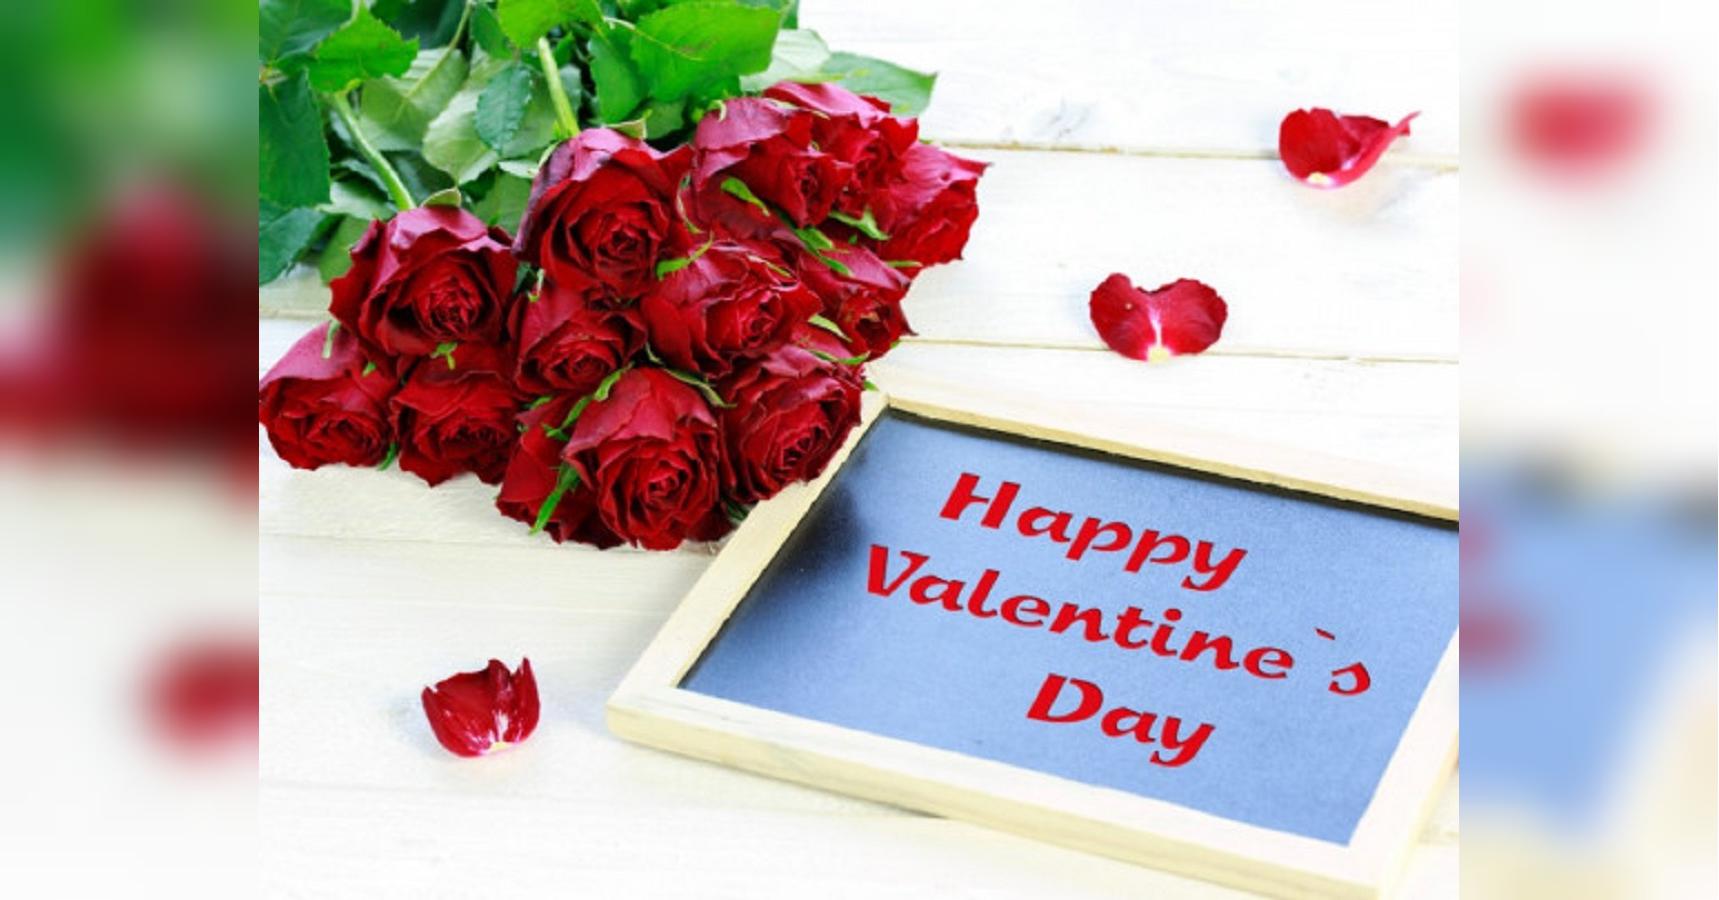 Прикольные поздравления с Днем святого Валентина мужу — 14 февраля